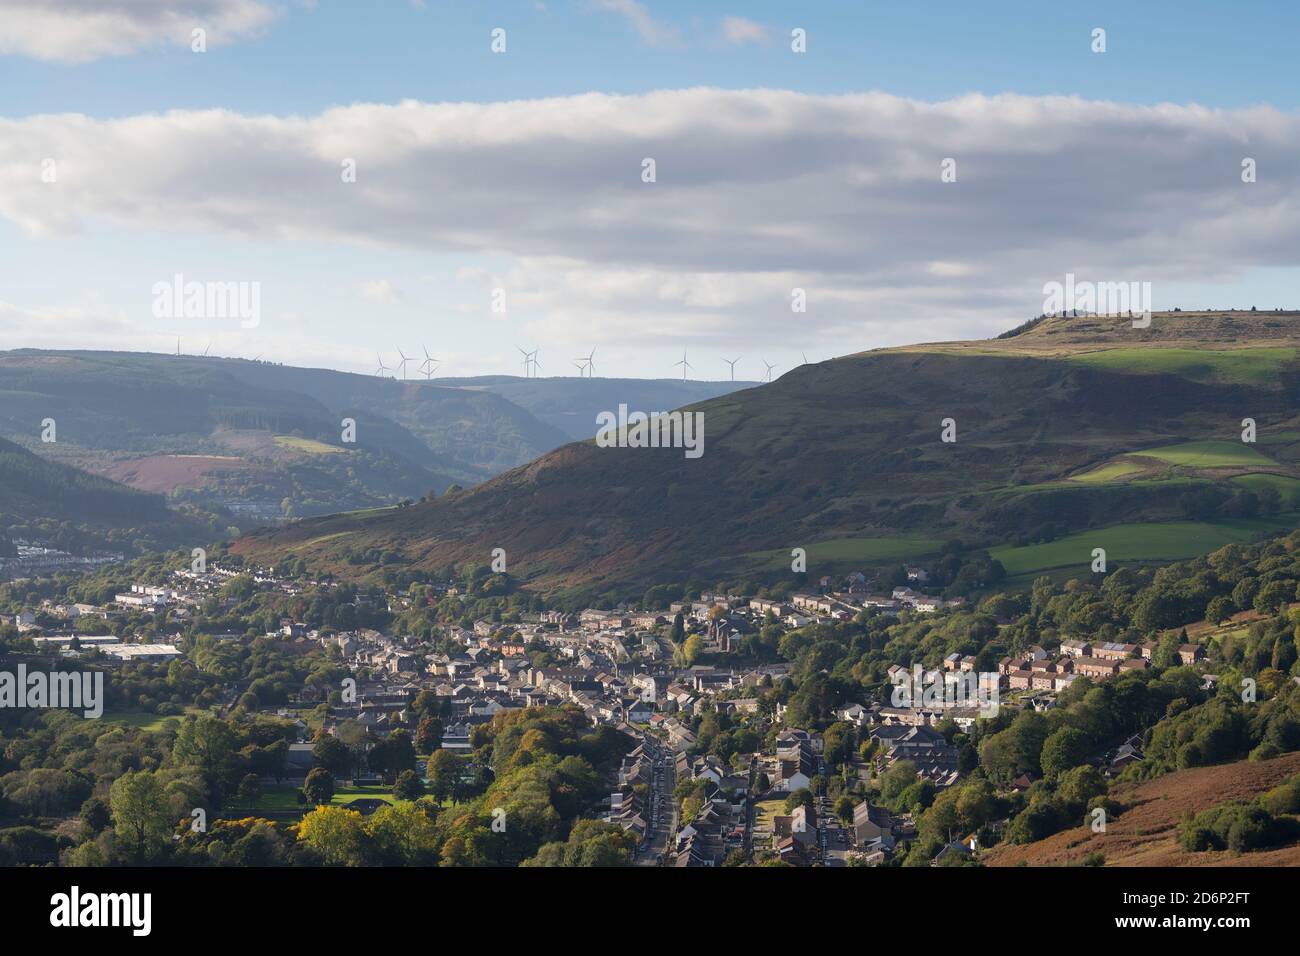 Reihenhäuser in der Rhondda, Wales, Großbritannien. Stockfoto